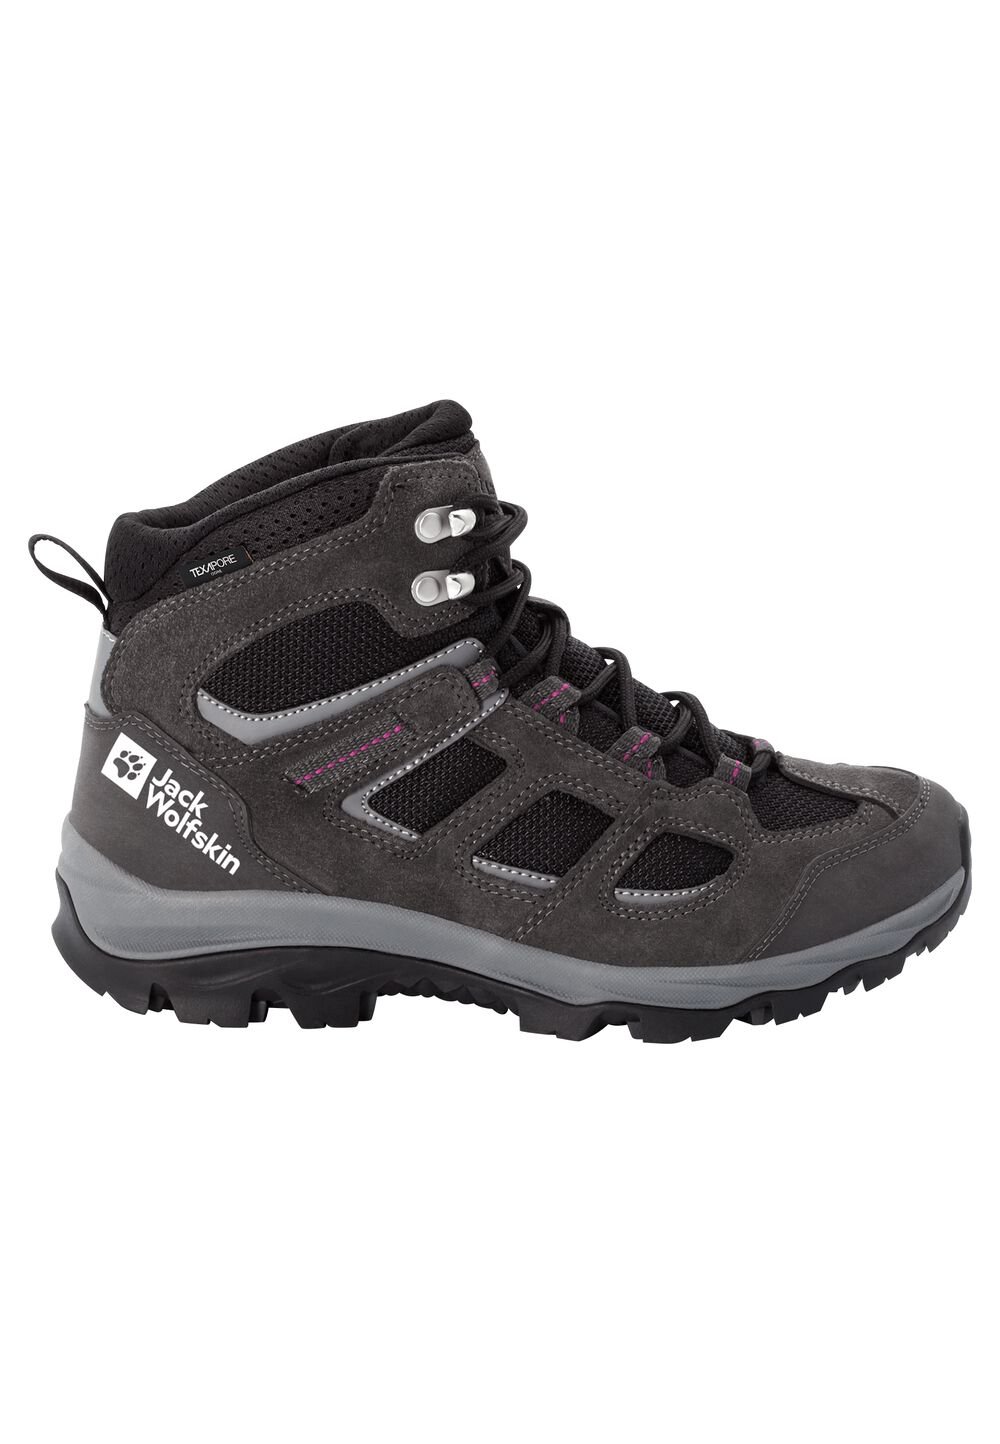 Chaussures de randonnée imperméables femmes Vojo 3 Texapore Mid Women 6 gris dark steel / purple